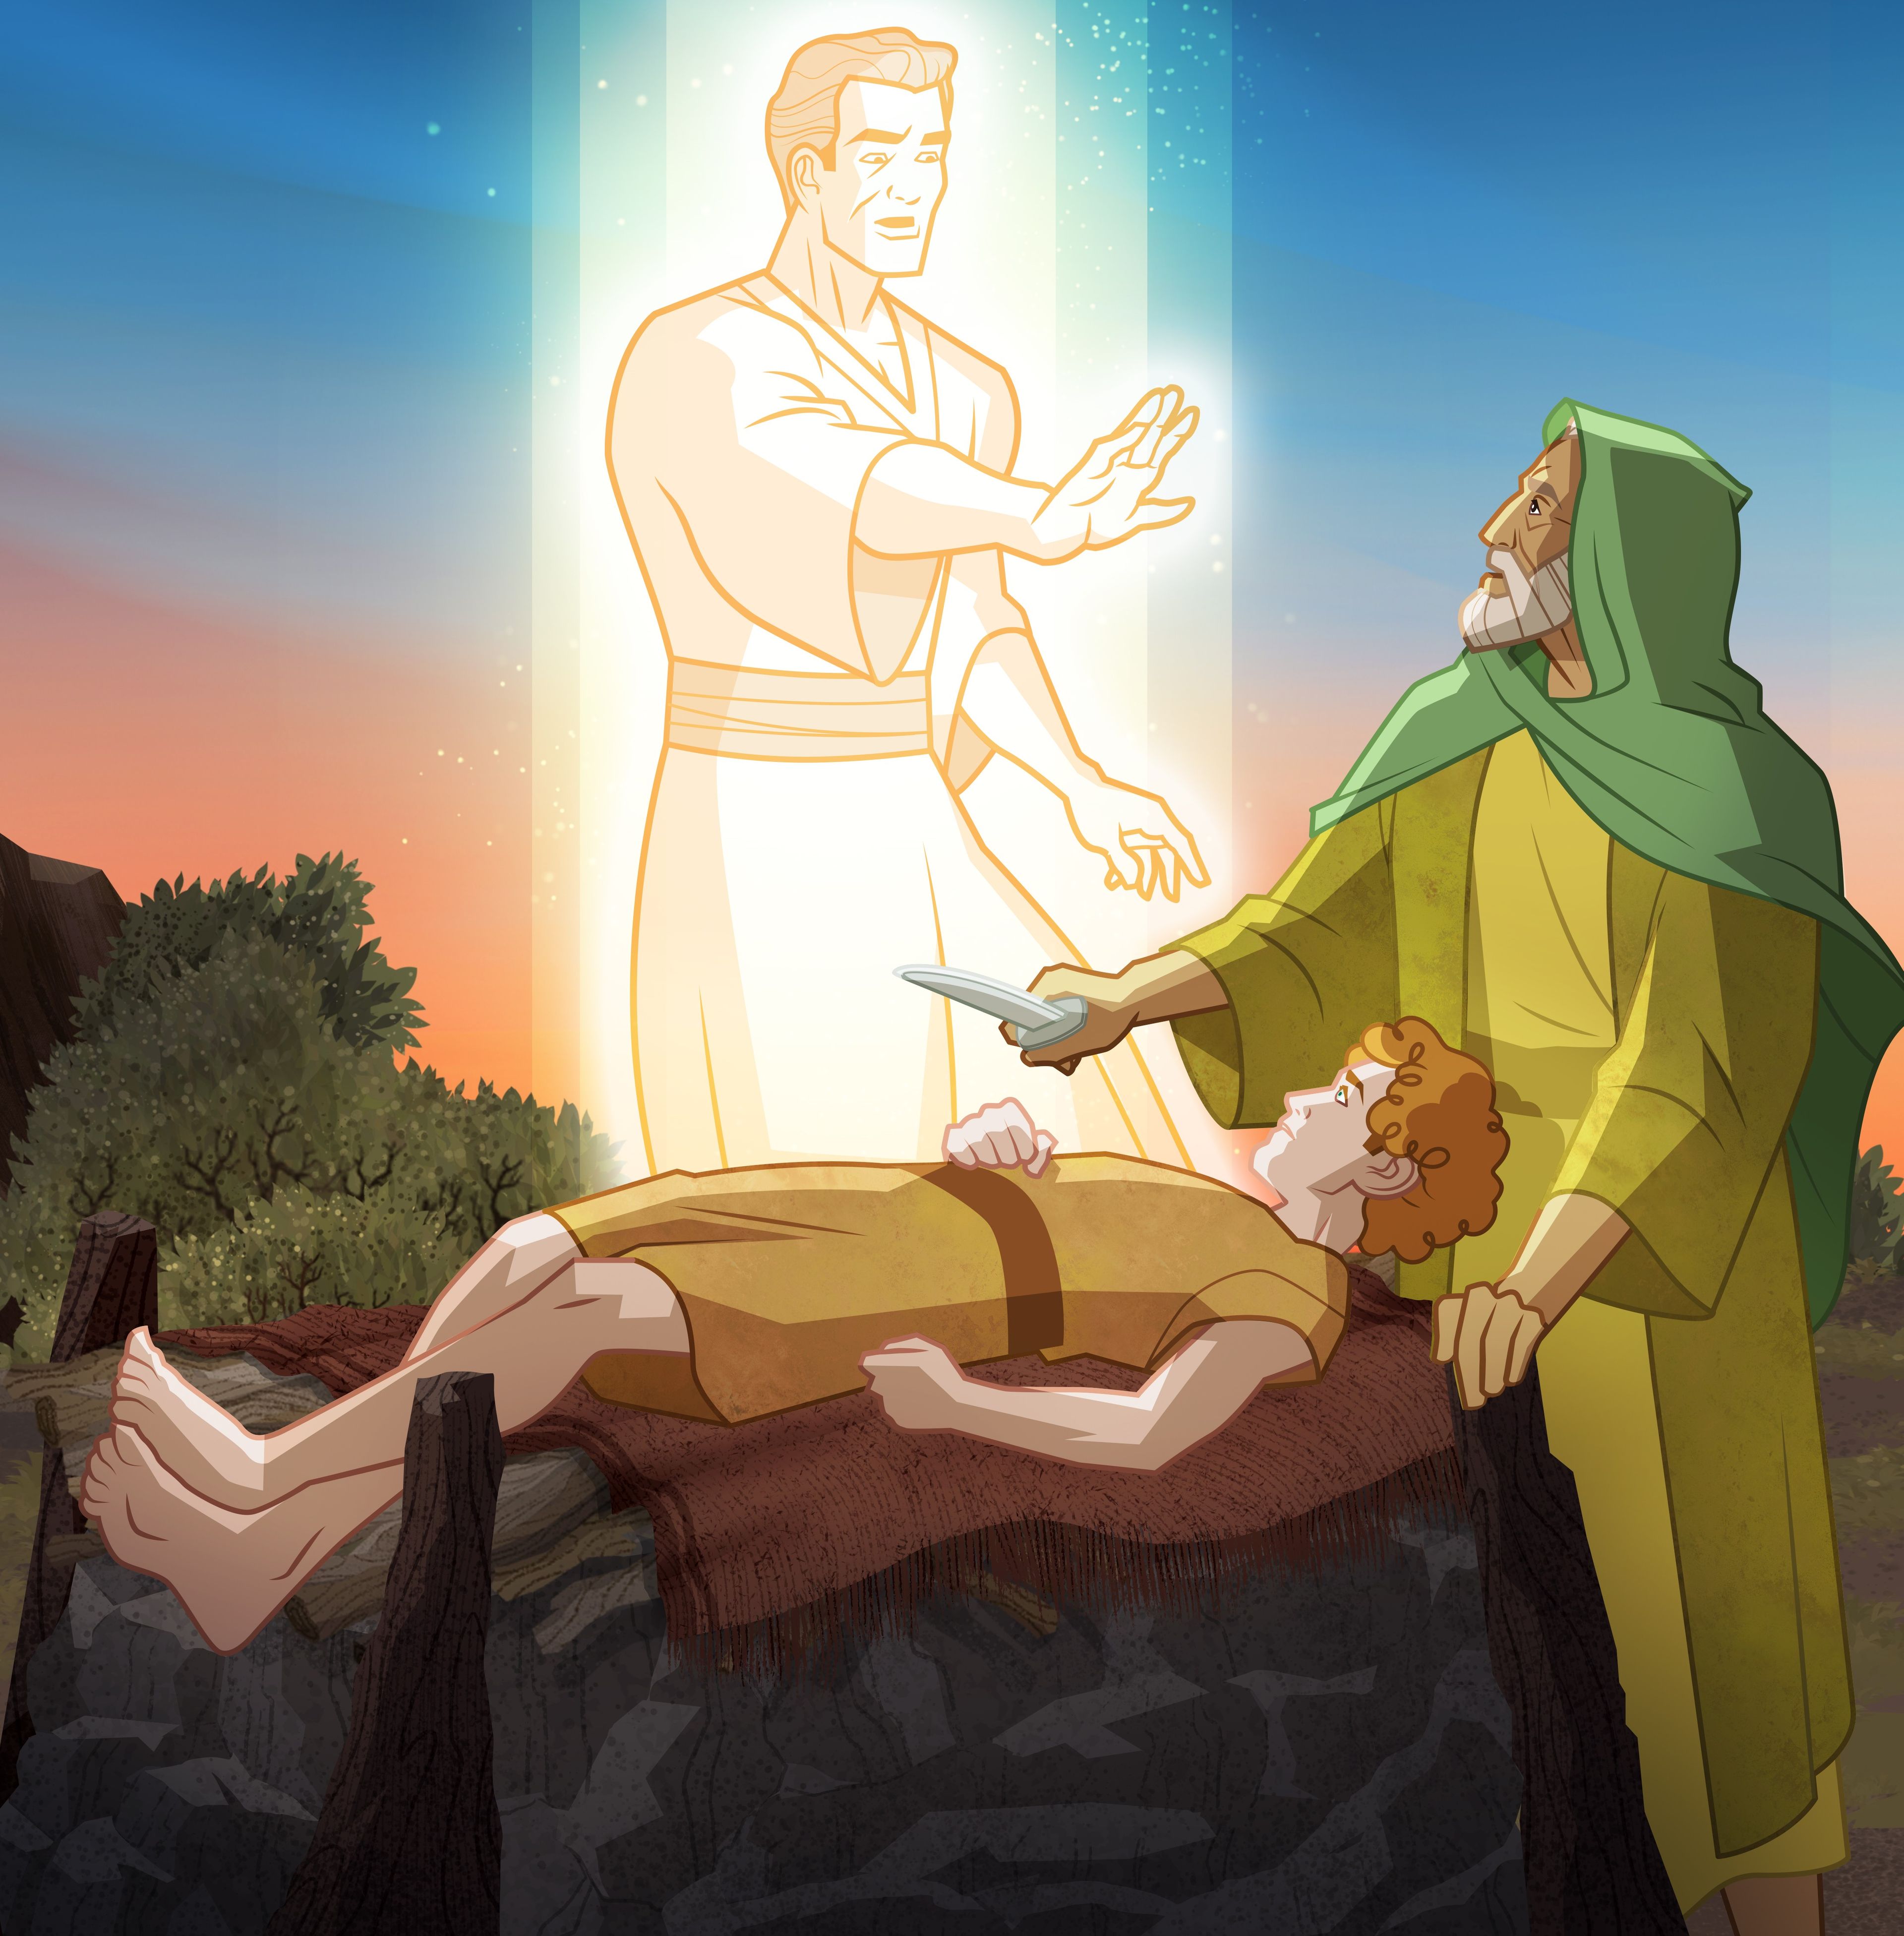 Illustration eines Engels, der Abraham und Isaak erscheint 
Genesis 22:10-12